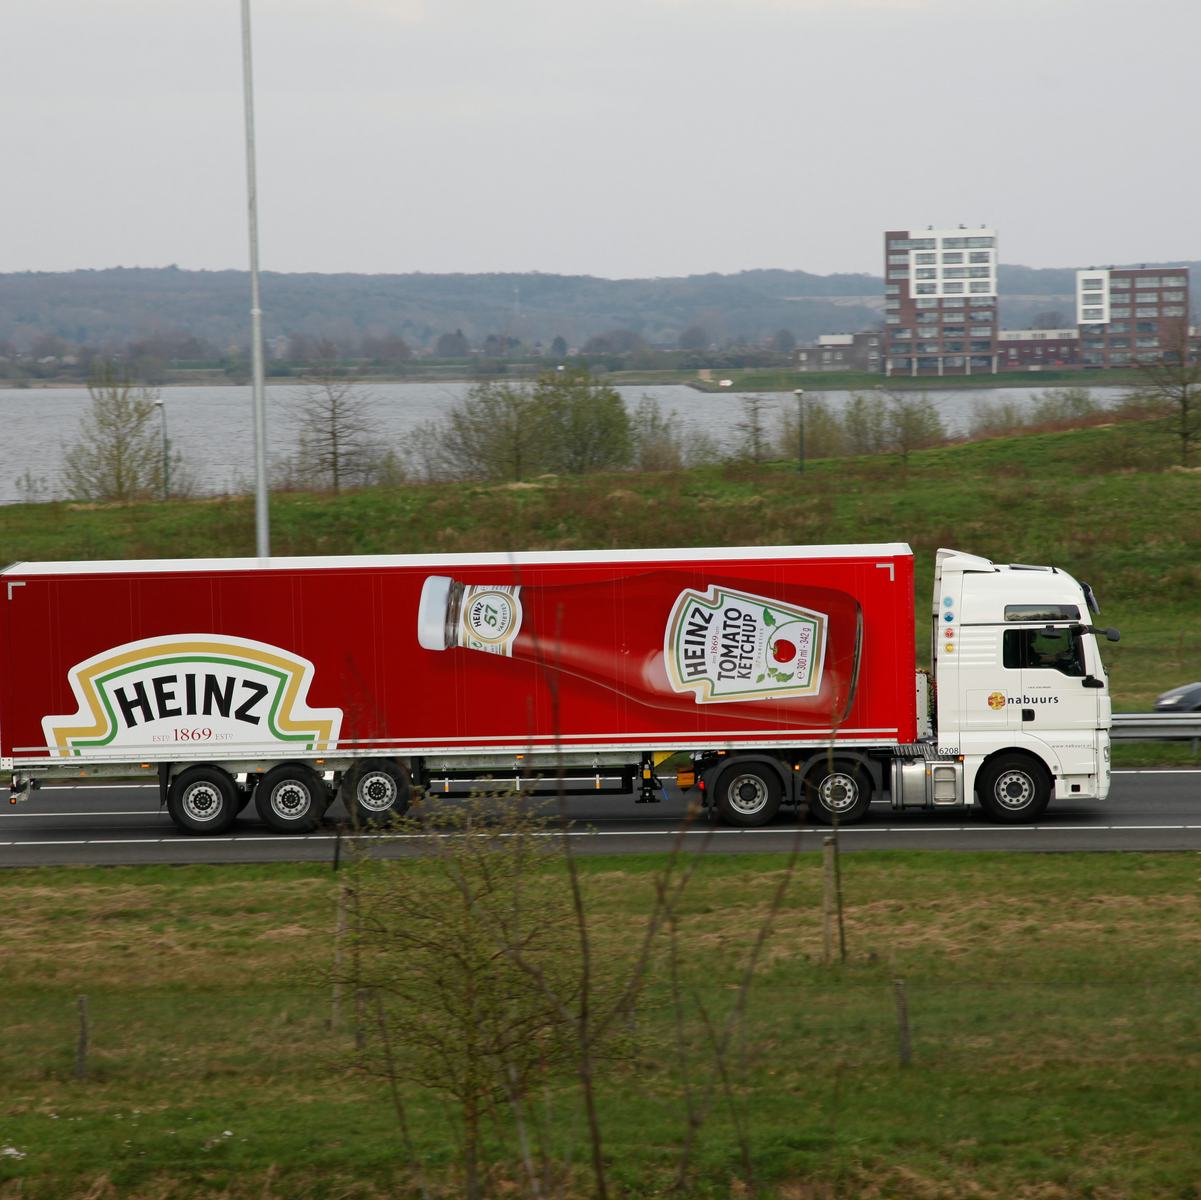 Eigenaren Heinz nemen Kraft Foods over